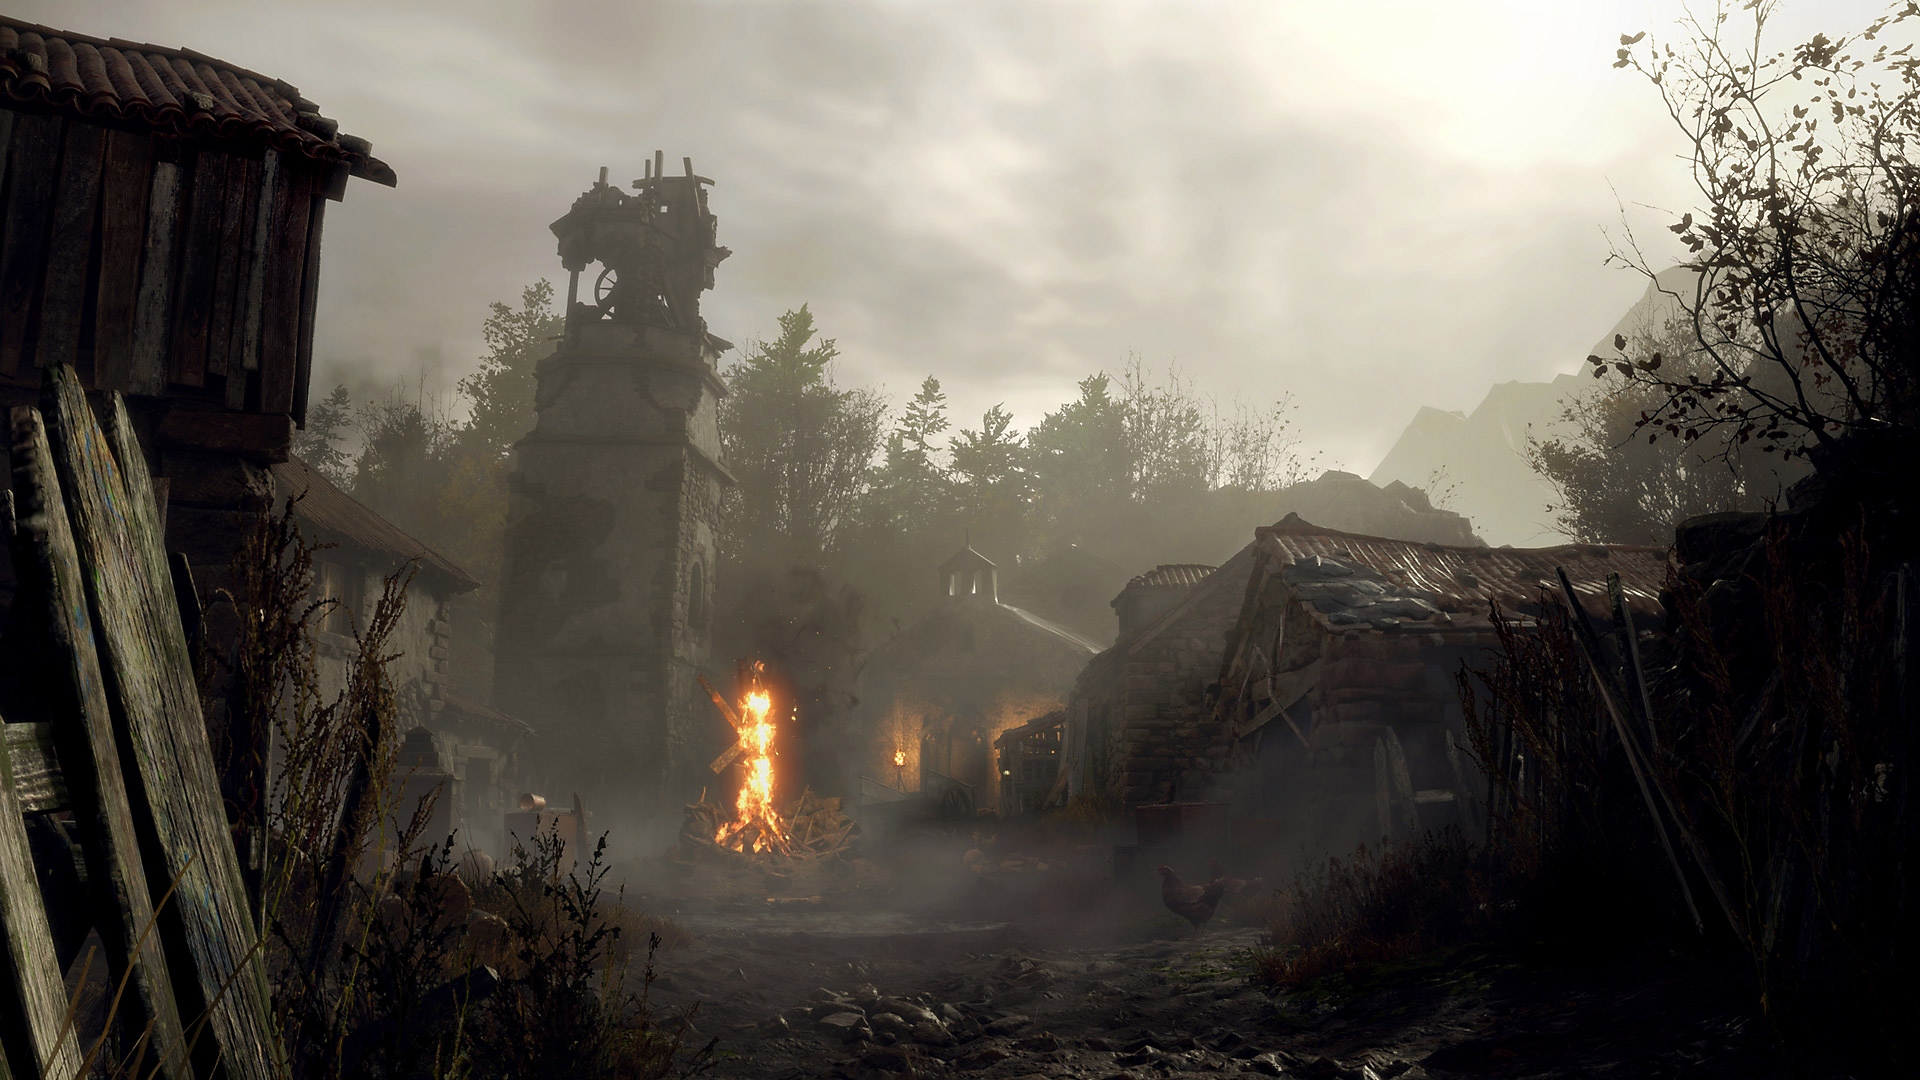 Resident Evil 4 -pelin kuvakaappaus, jossa näkyy nuhjuisessa ja ränsistyneessä kylässä palava krusifiksi.